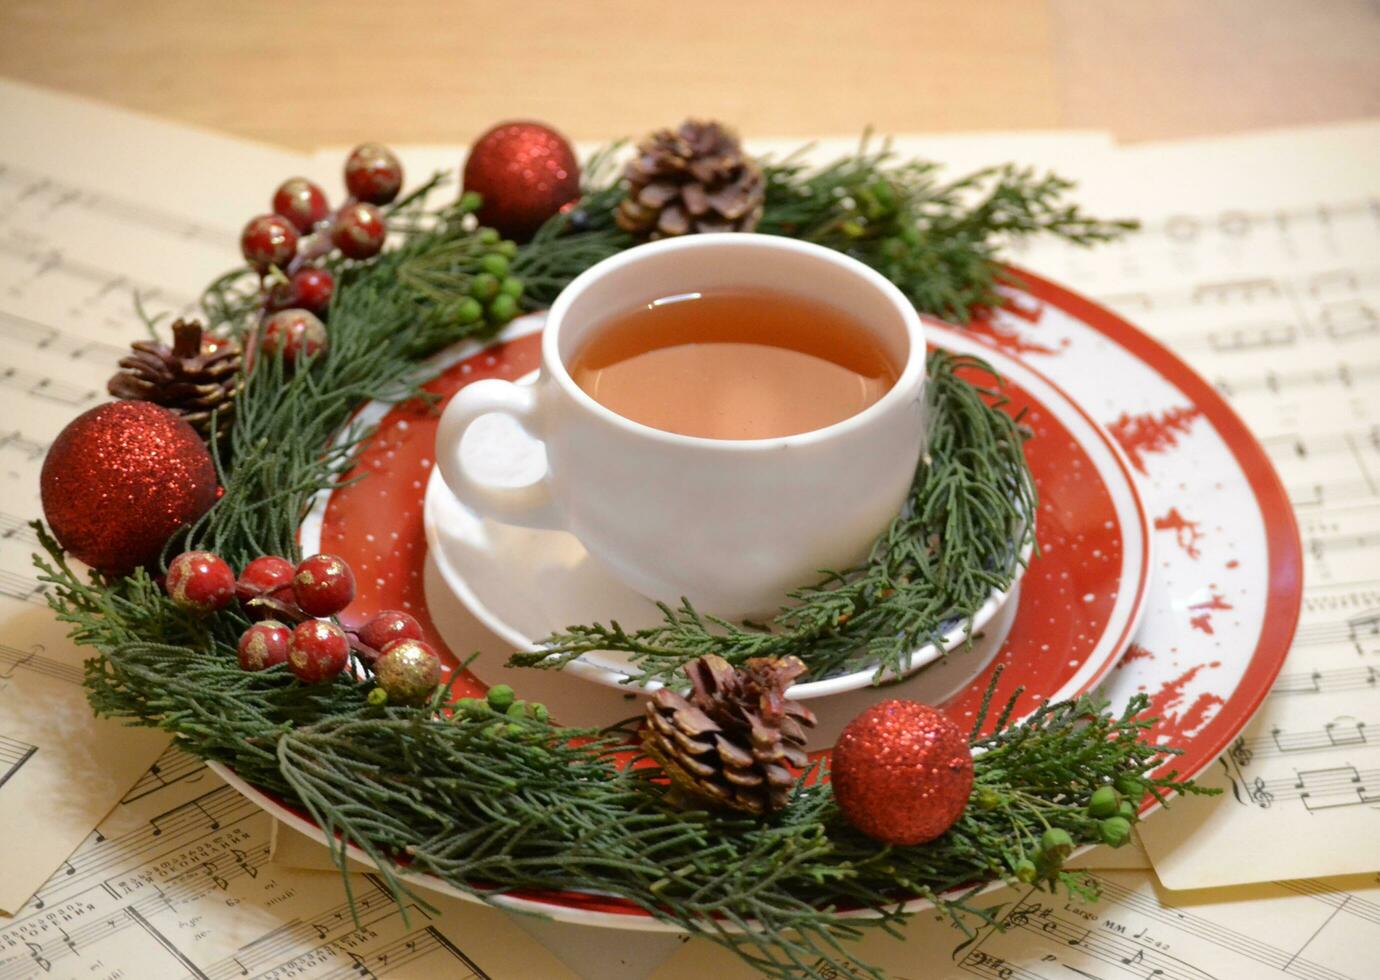 nuevo años decoración con un libro, un taza de té, galletas y Navidad árbol detalles foto